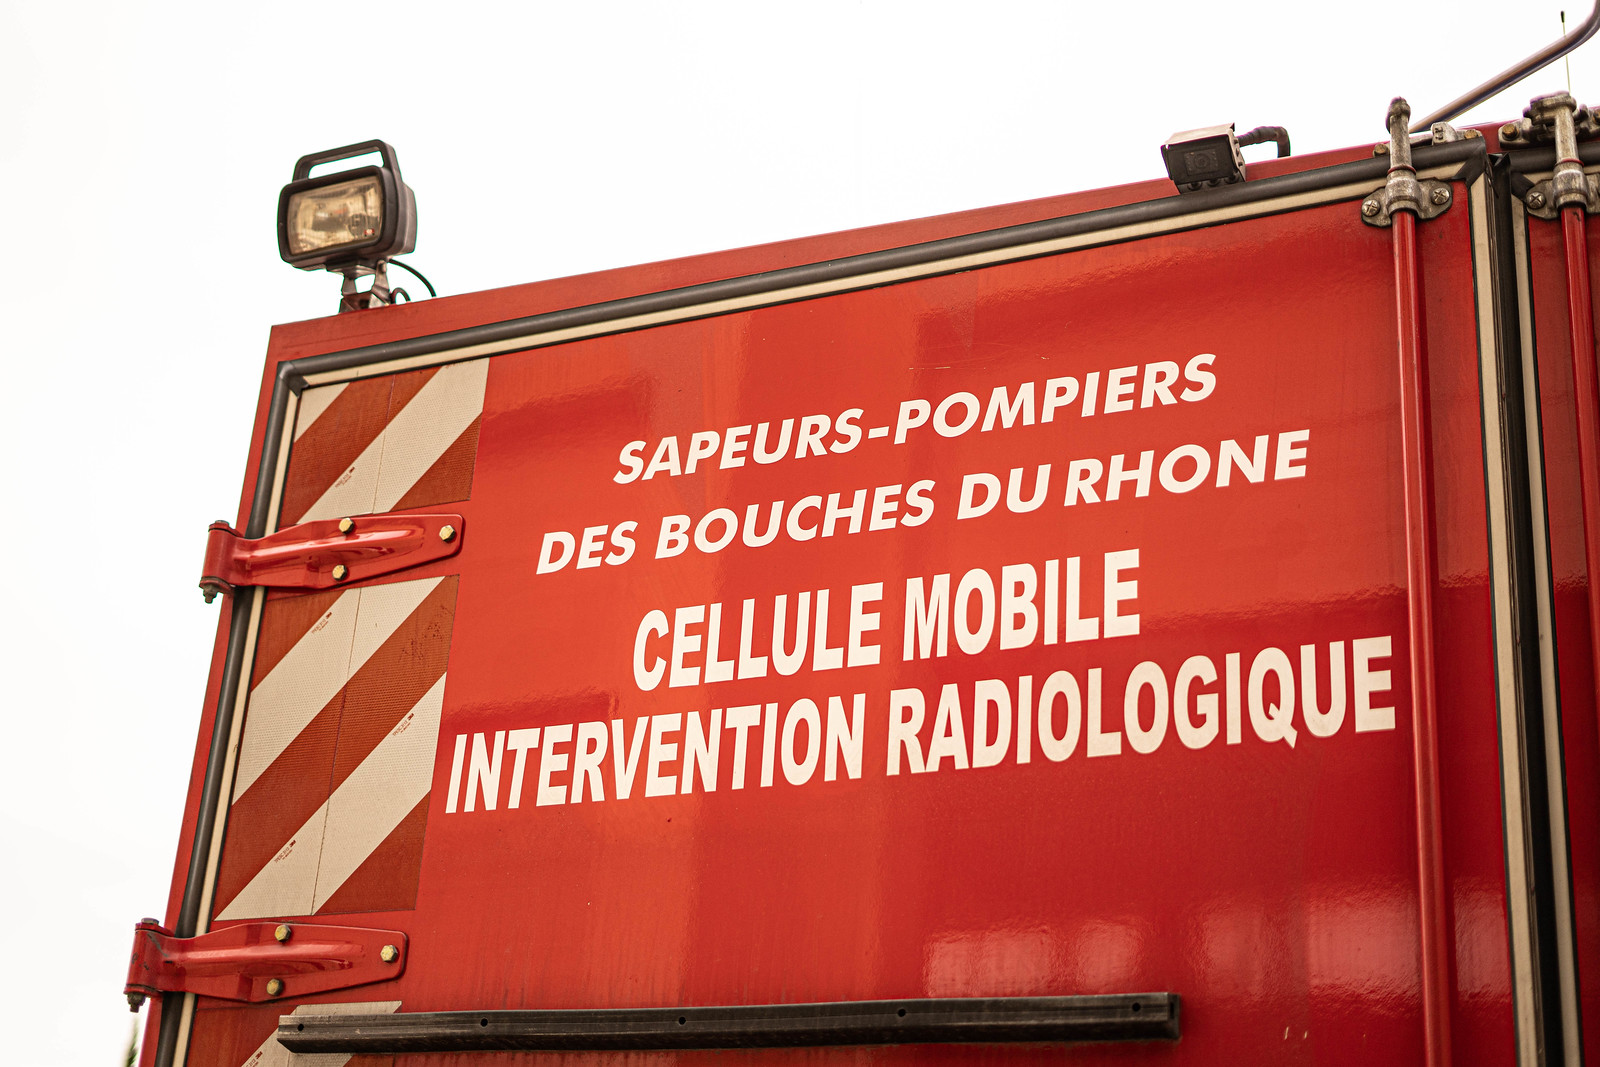 Formation : stage risque radiologique de niveau 2 (rad 2) organisé au cis Aix - La Chevalière